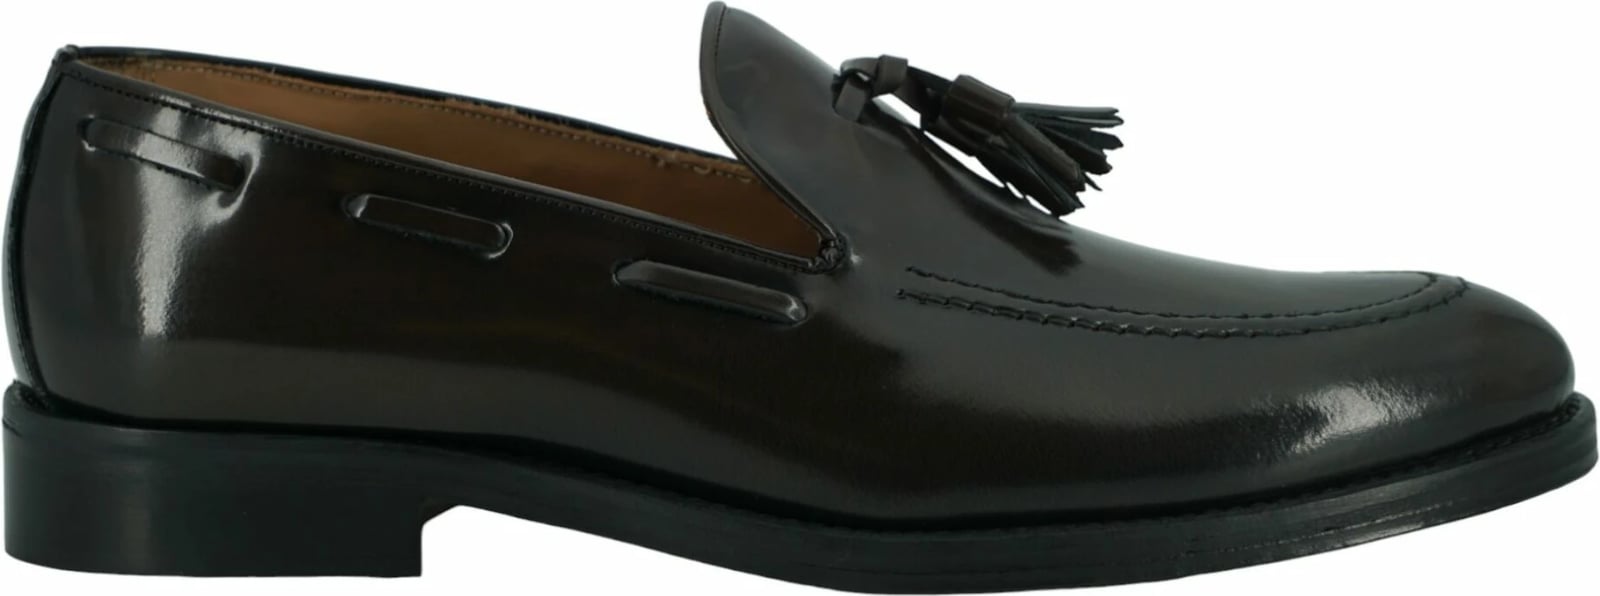 Këpucë formale për meshkuj Saxone of Scotland, ngjyrë kafe e errët